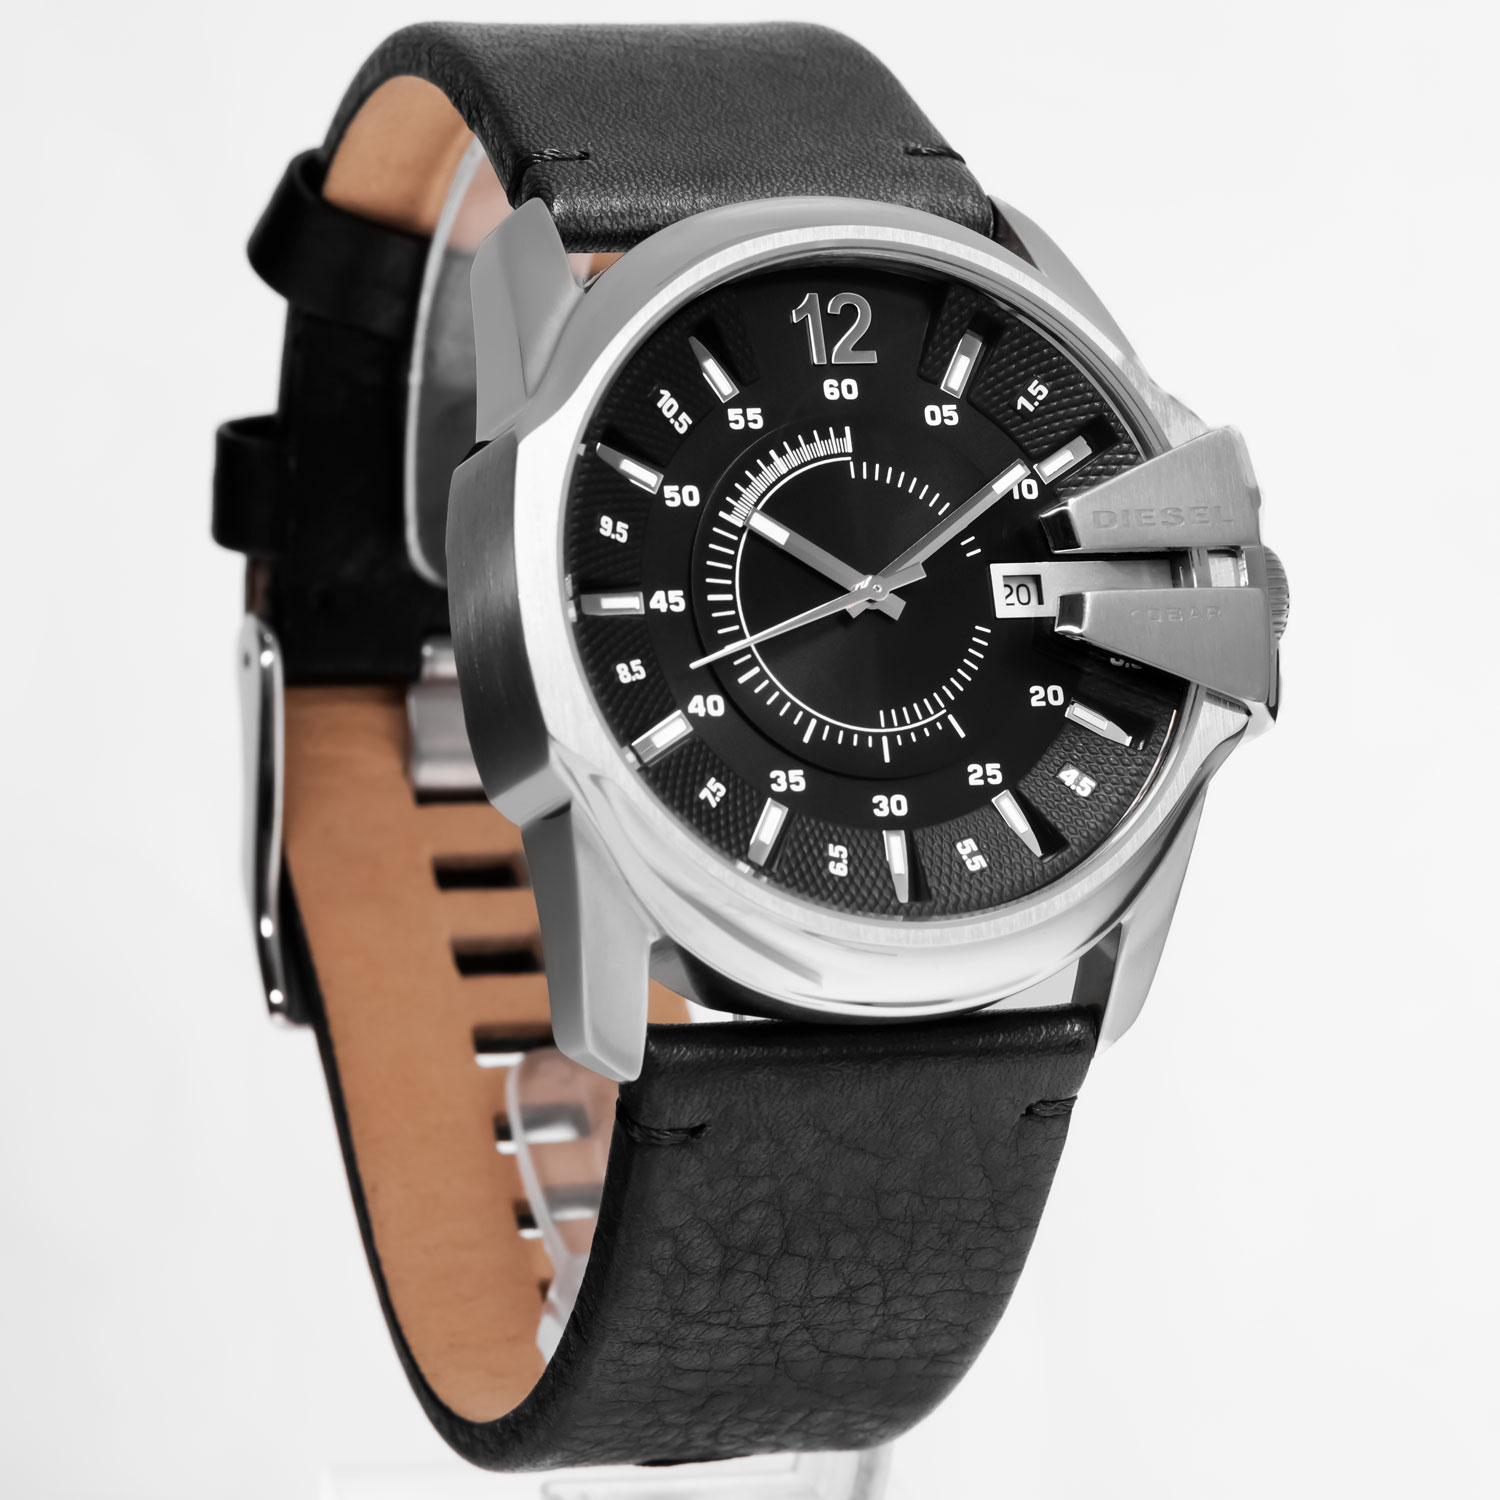 Часы Diesel DZ1907 - купить мужские наручные часы в интернет-магазине  Bestwatch.ru. Цена, фото, характеристики. - с доставкой по